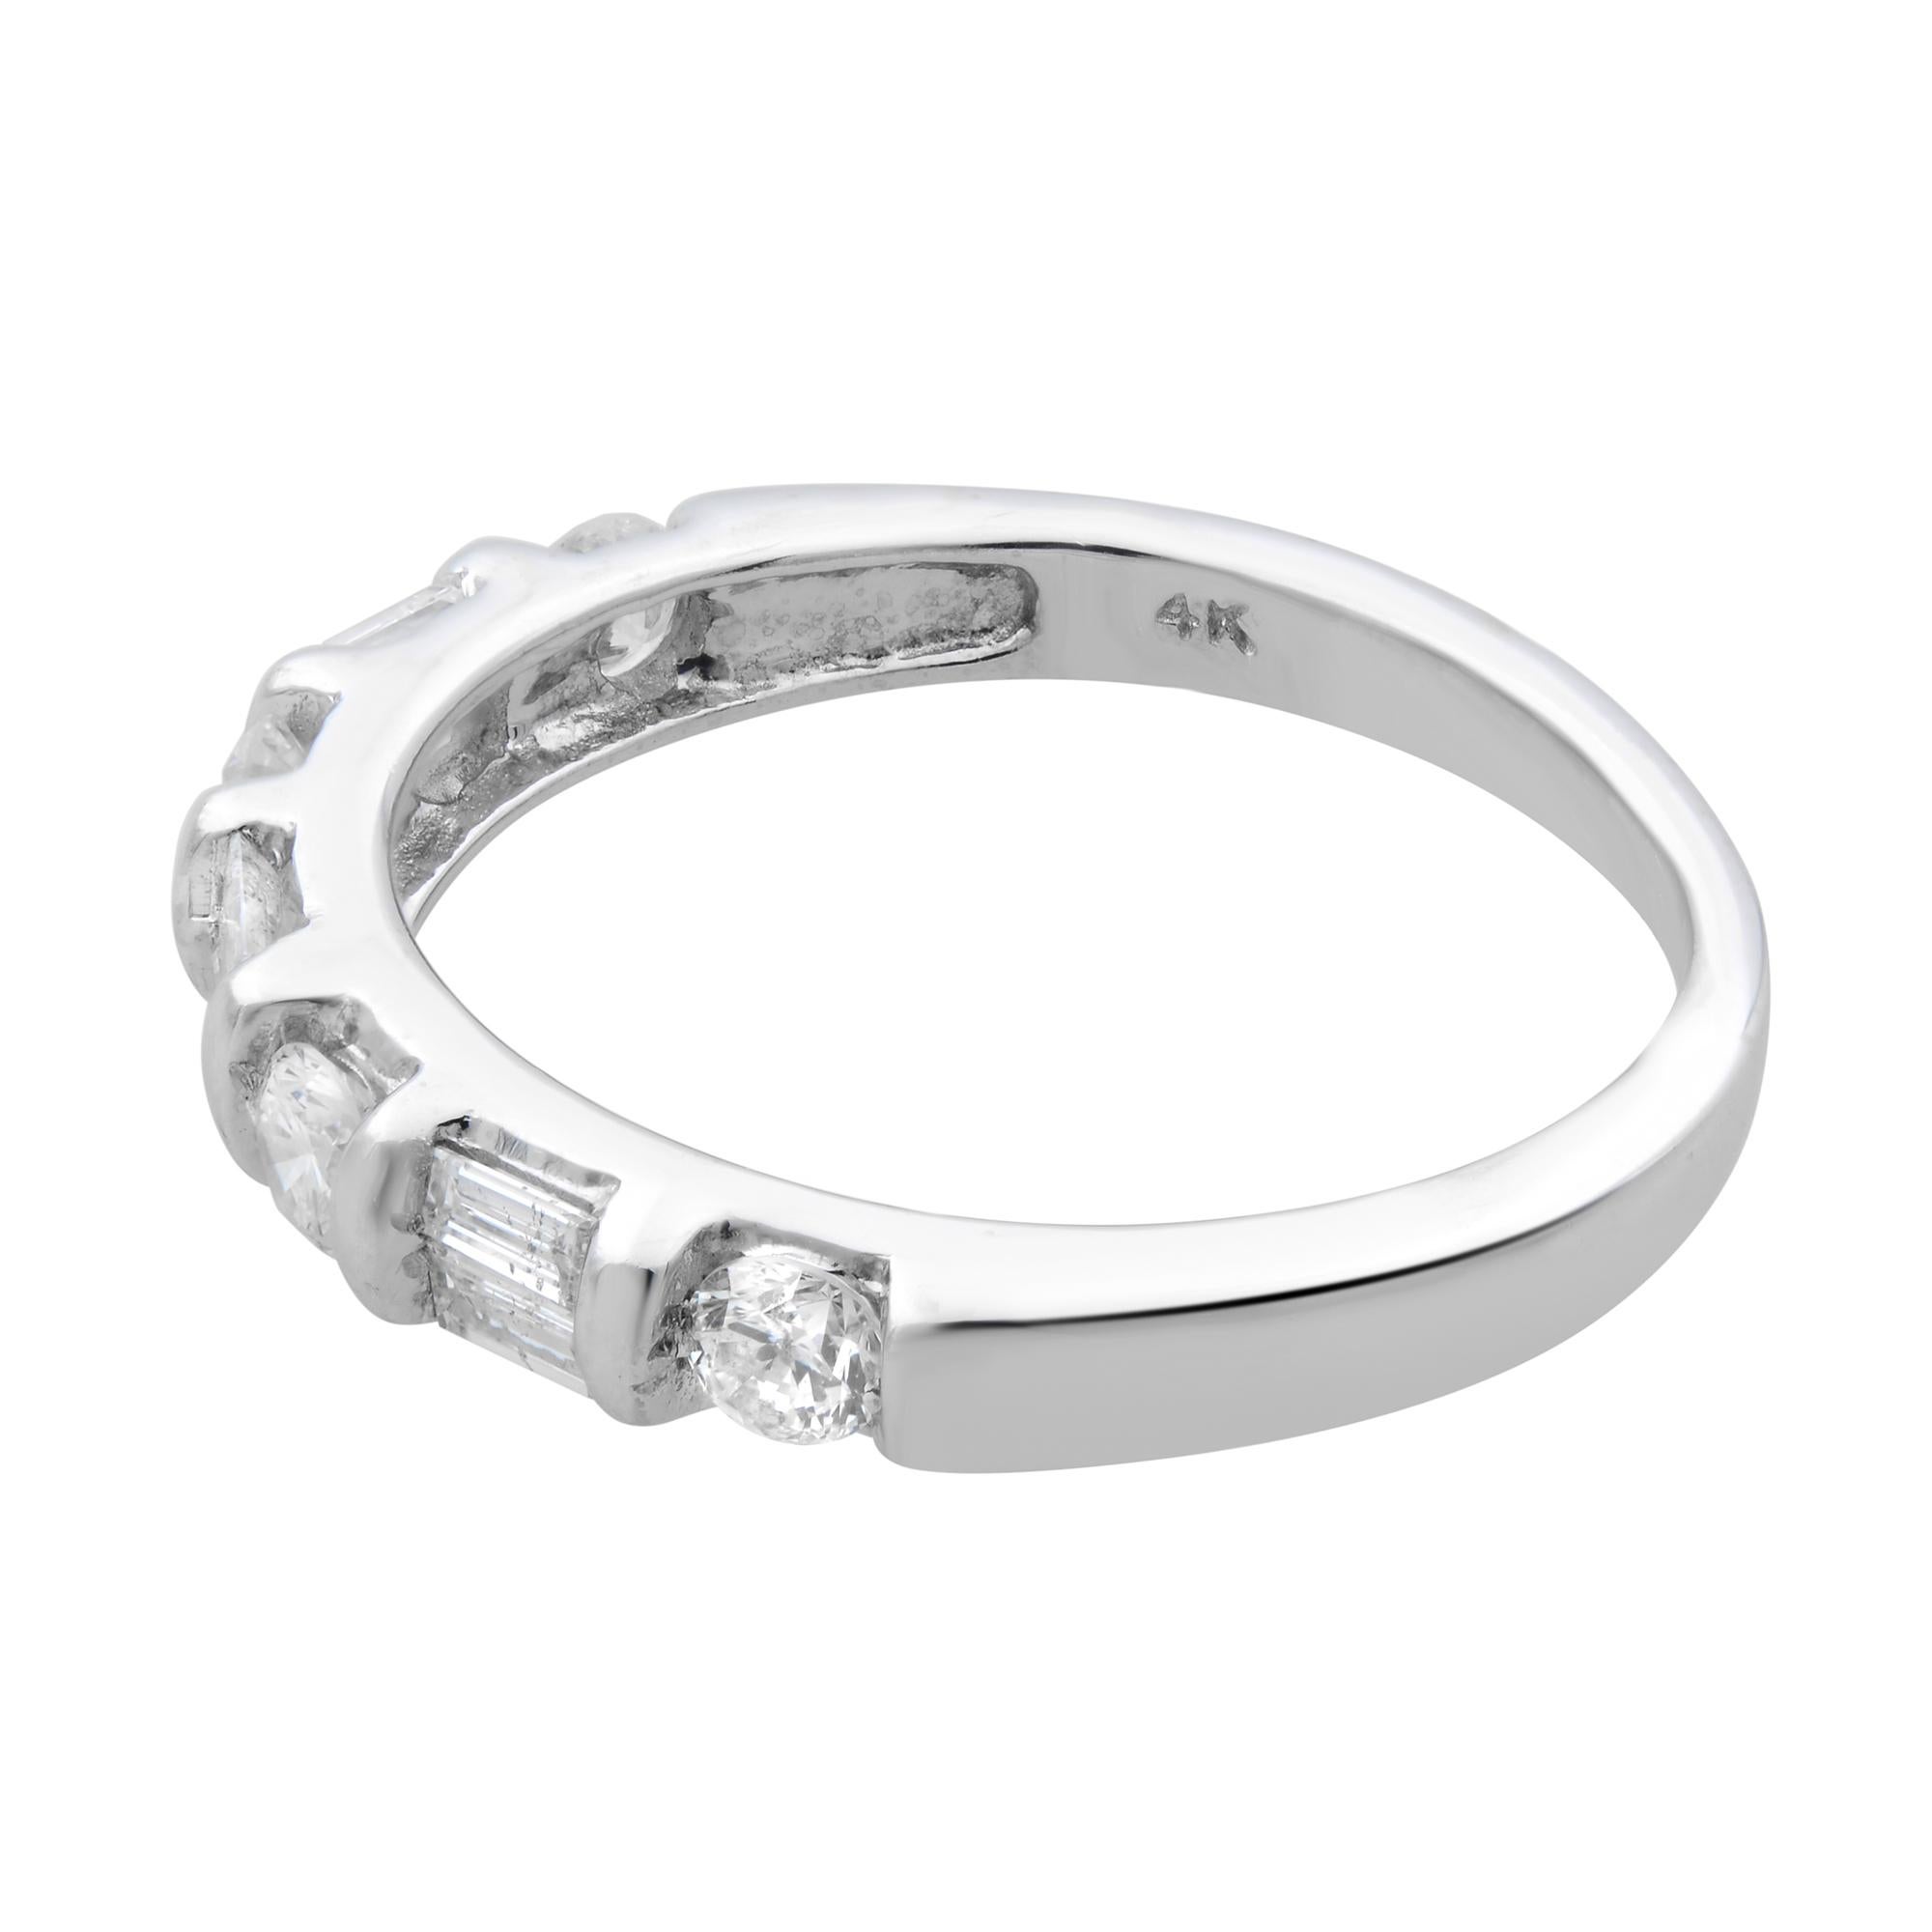 Baguette Cut Rachel Koen Diamond Band Ring 14K White Gold 0.75cttw For Sale